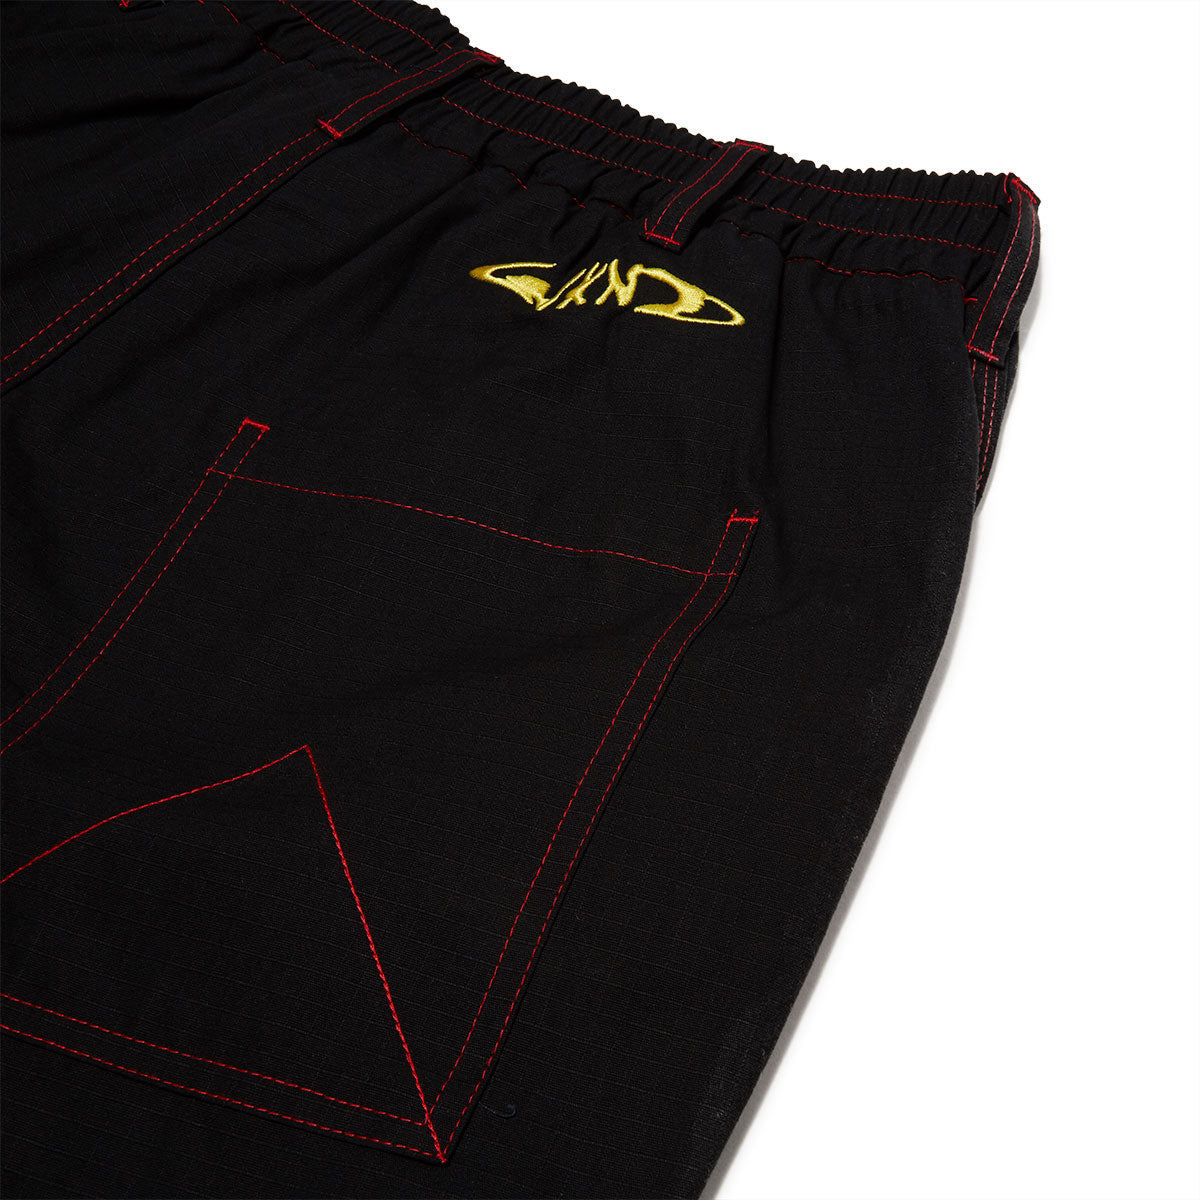 WKND Loosies Pants - Black image 4